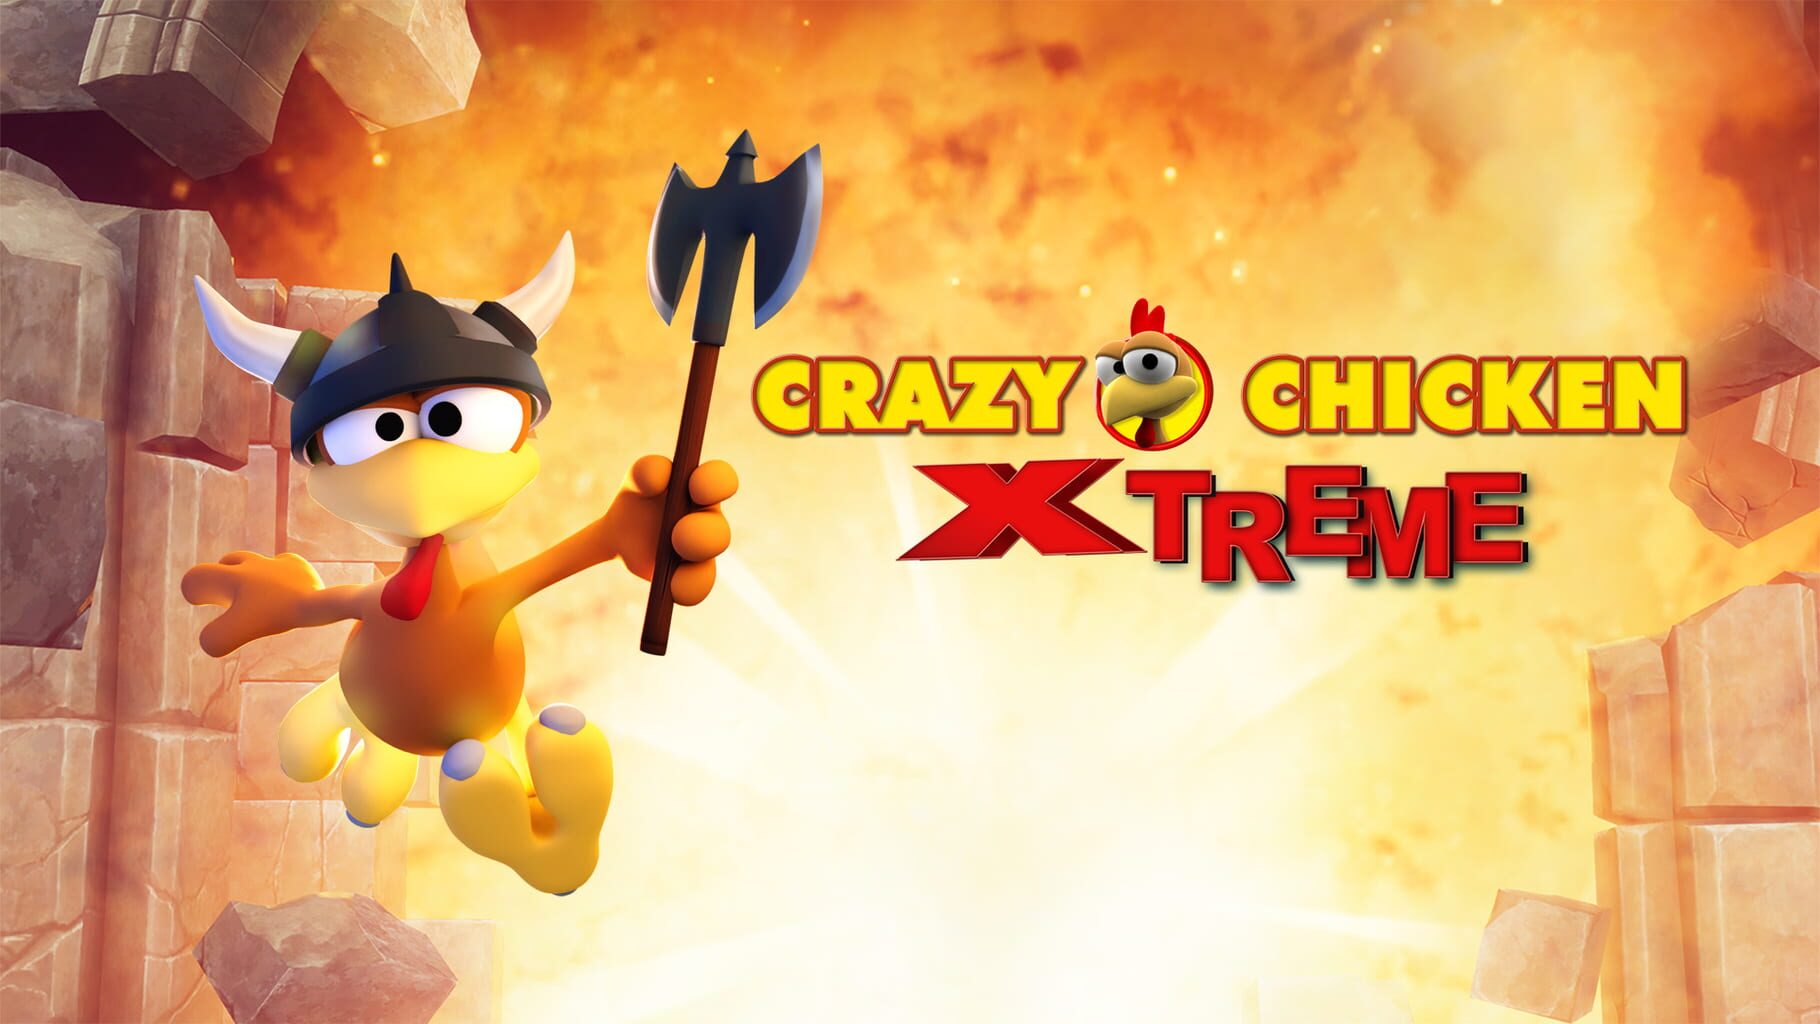 Crazy Chicken Xtreme artwork